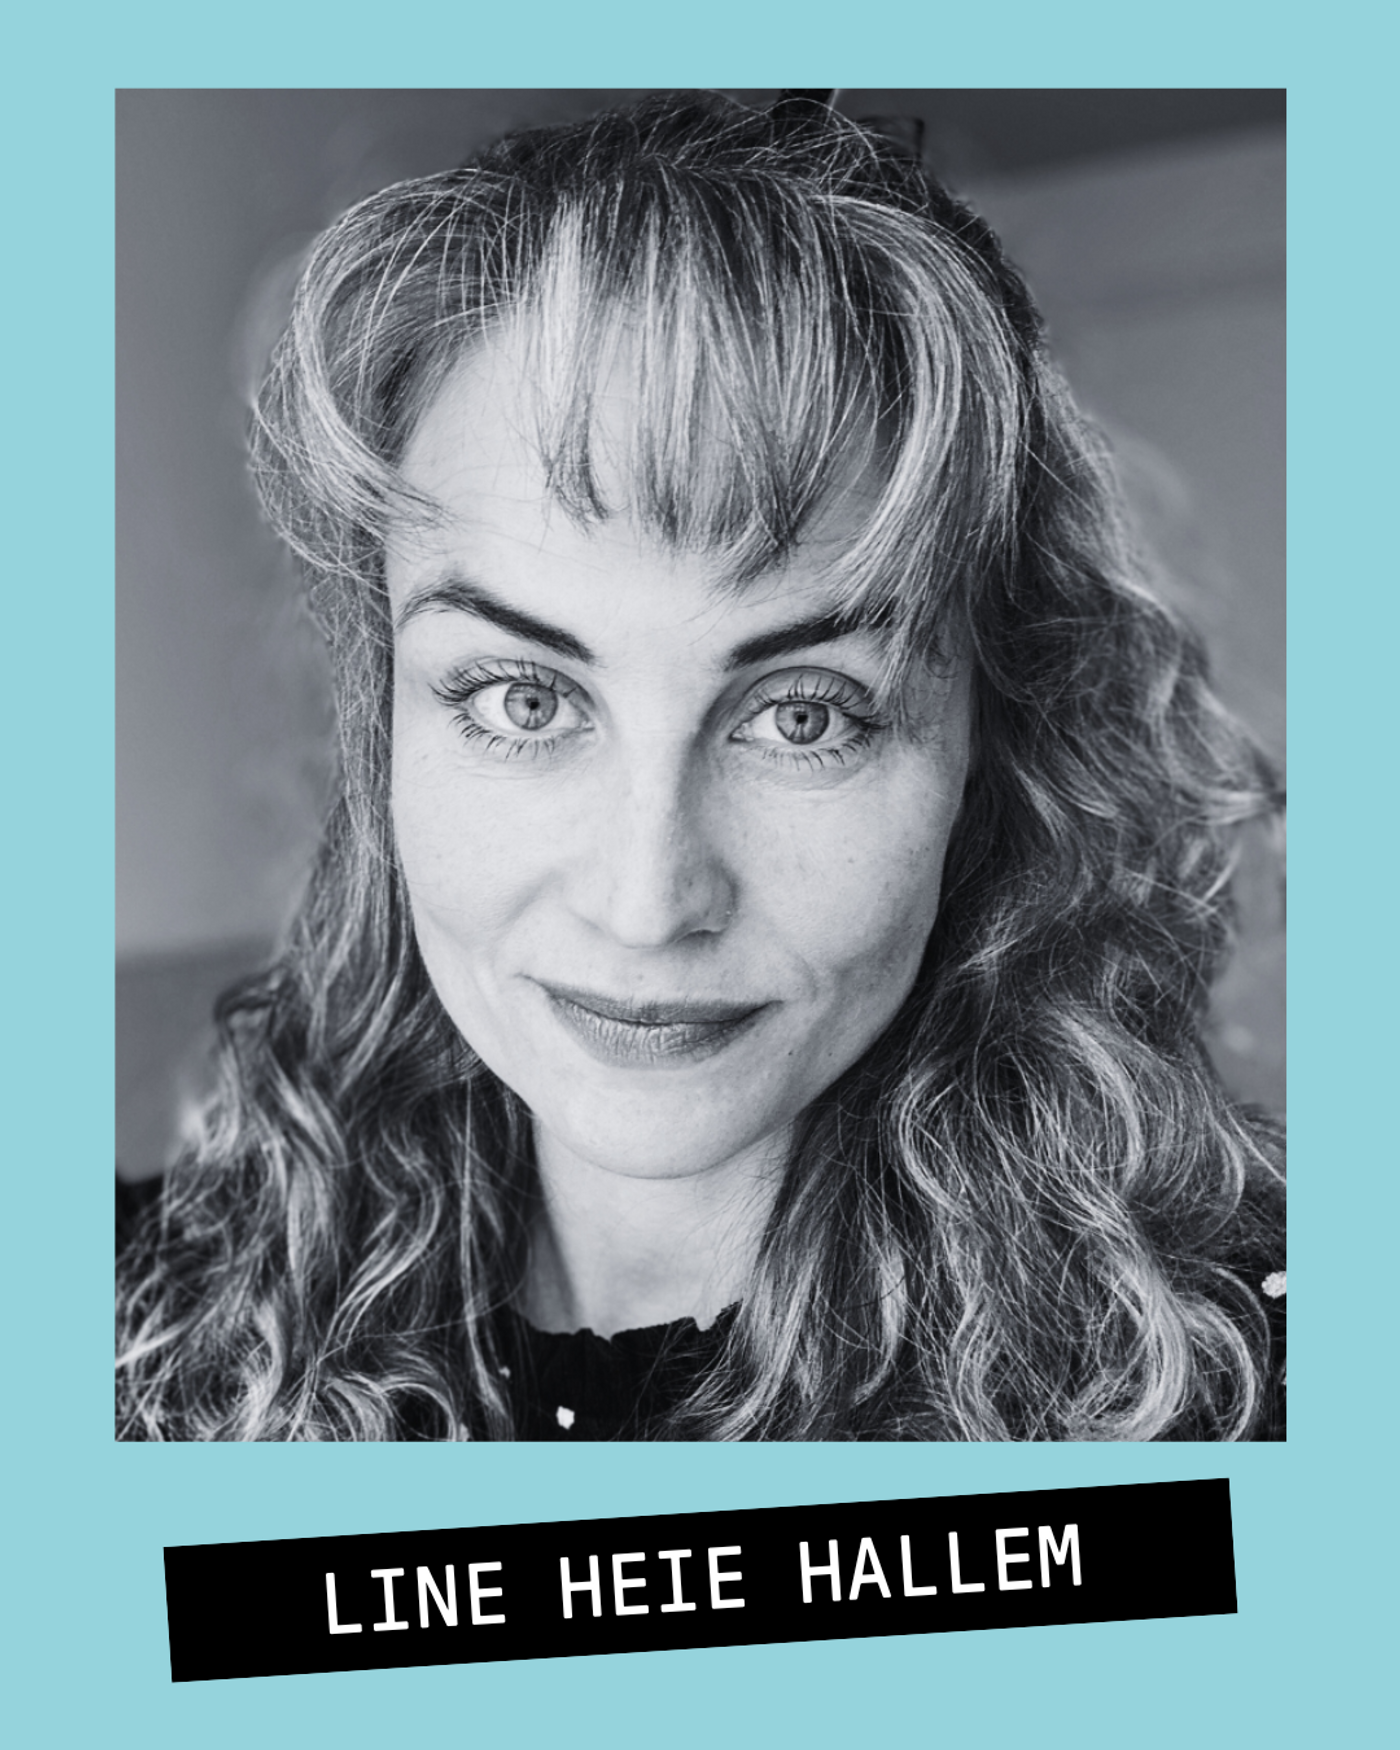 Portrettbilde av skuespiller Line Heie Hallem i sort/hvitt på turkis bakgrunn. Hun har løst krøllete blondt hår og pannelugg.